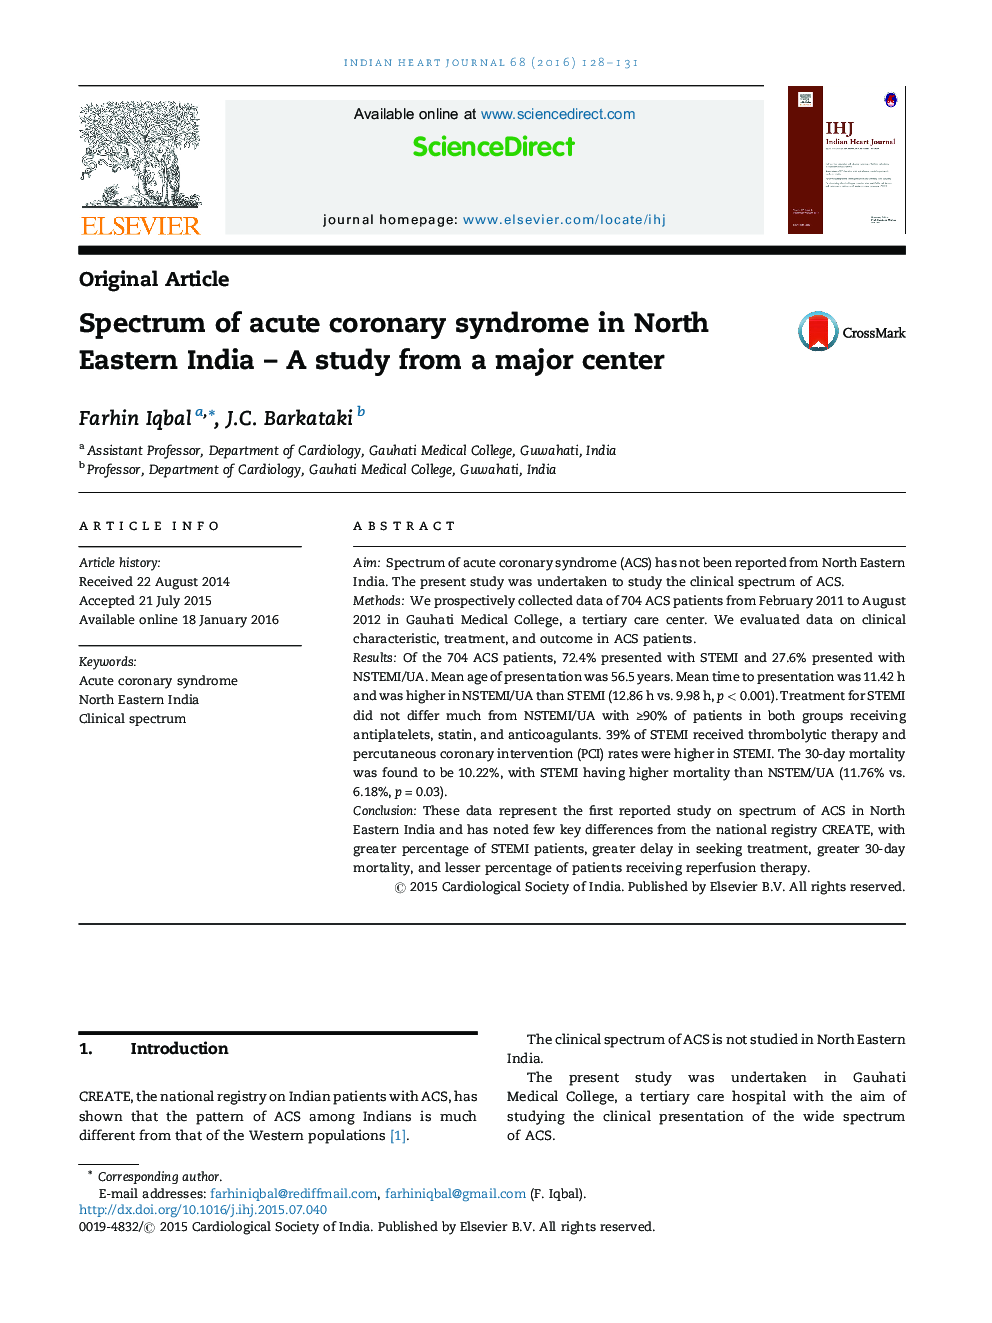 طیف سندرم کرونری حاد در شمال شرقی هند؛ یک مطالعه از یک مرکز عمده